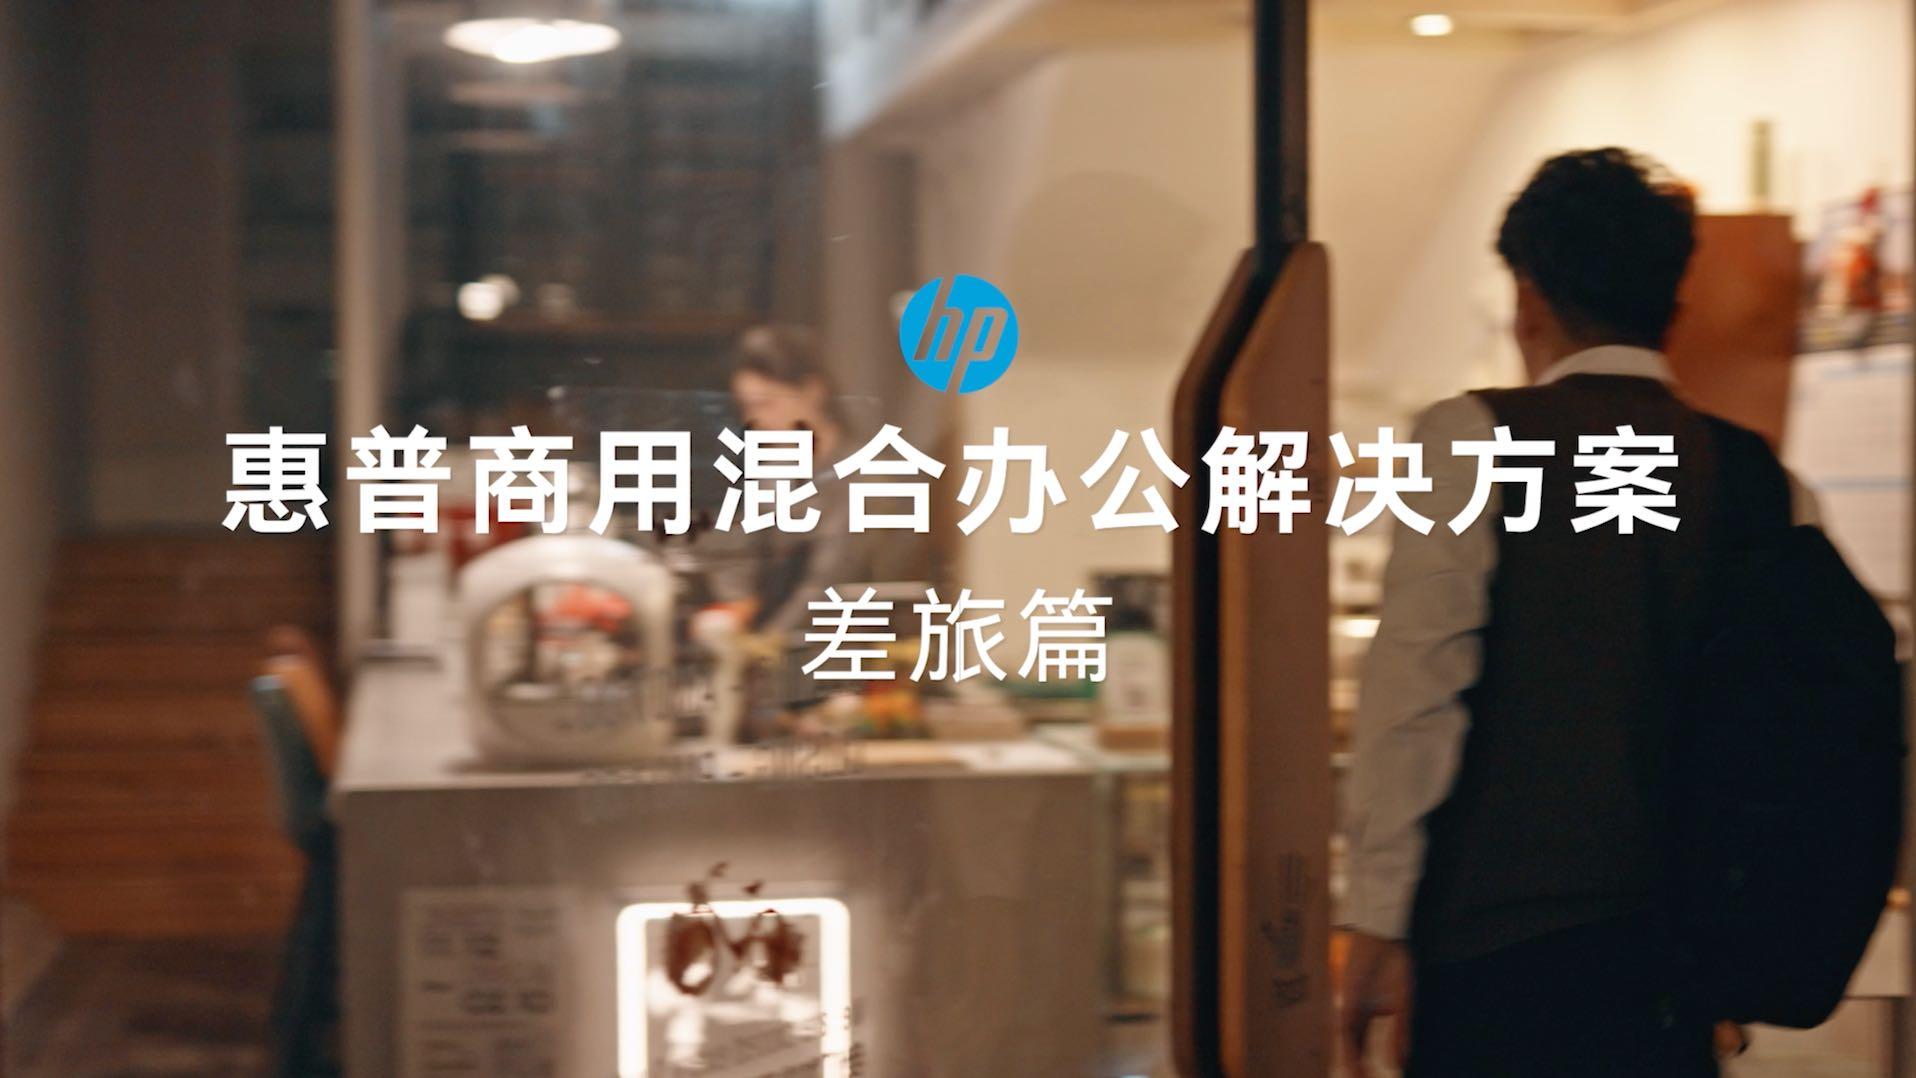 HP产品视频【差旅篇】